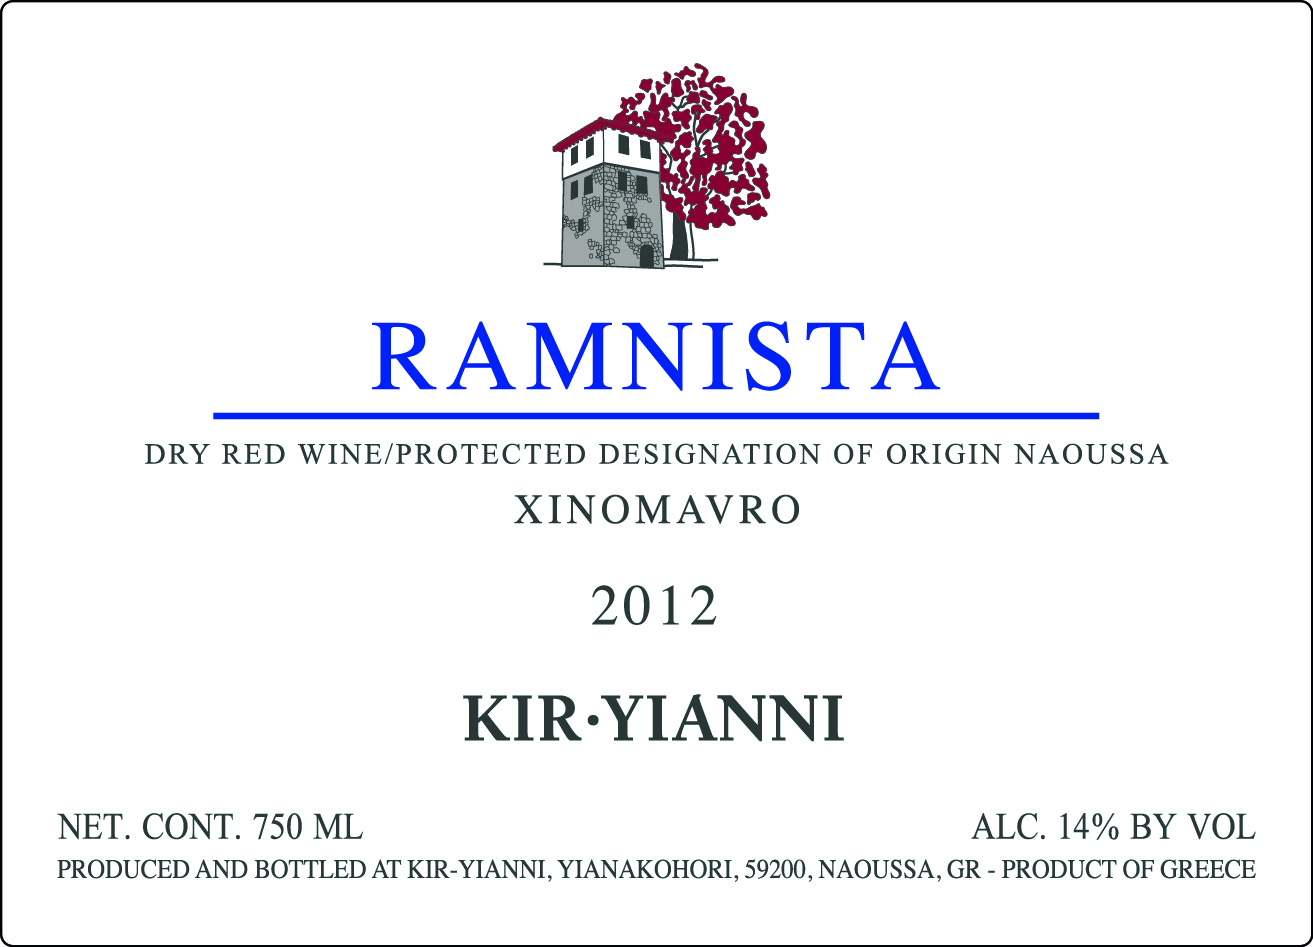 Ramnista Xinomauro griechischer Wein